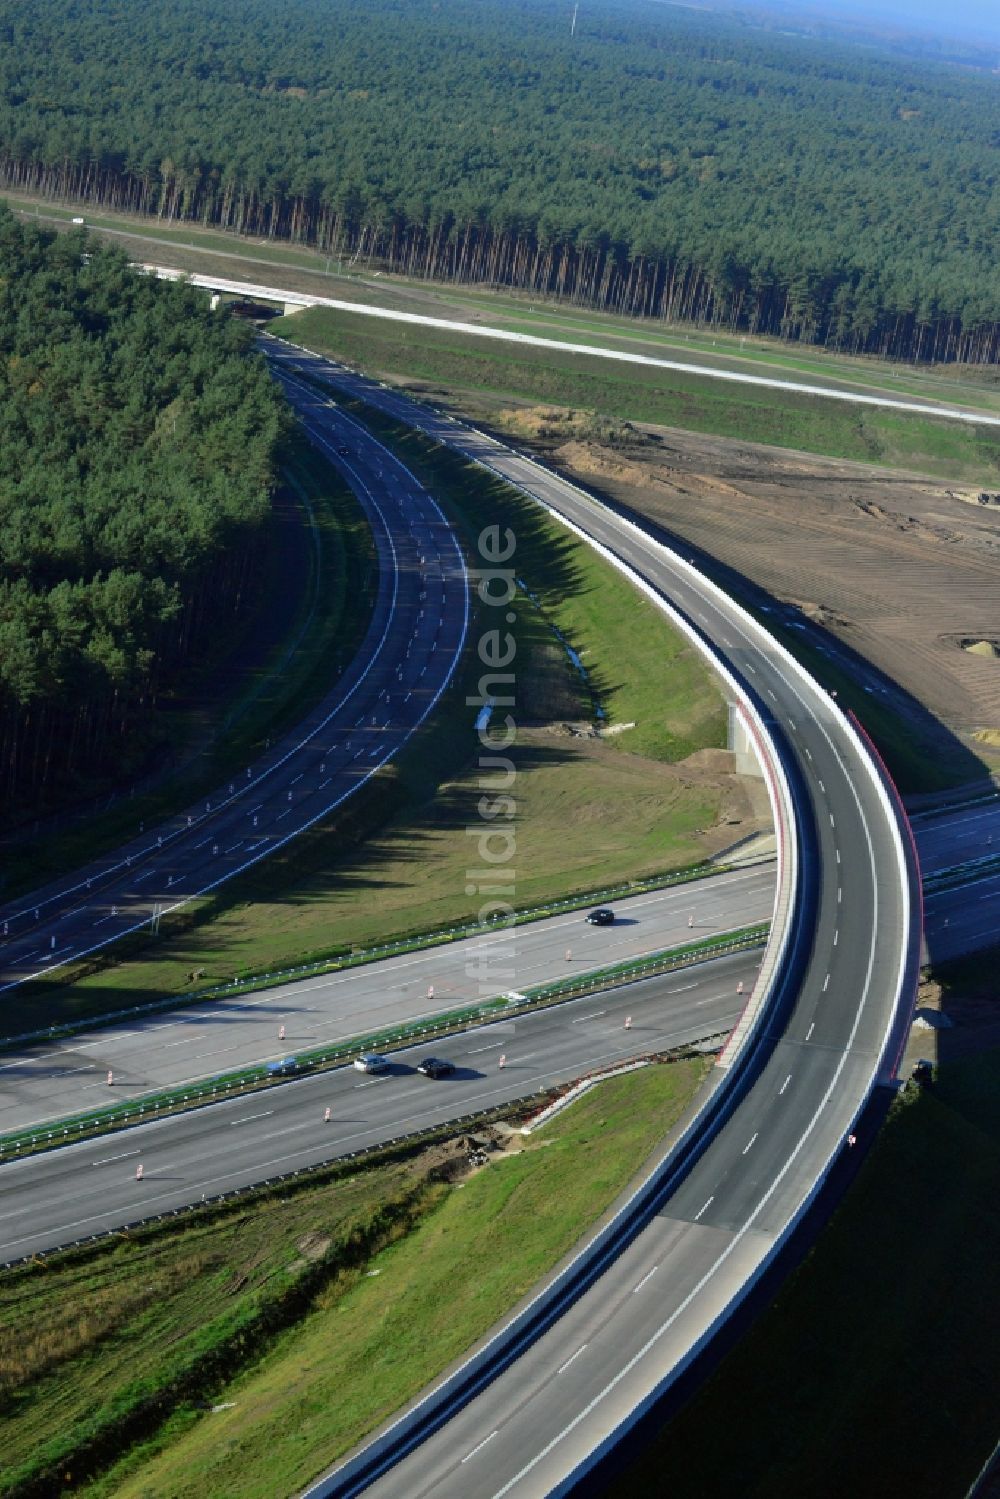 Groß Ziethen aus der Vogelperspektive: Fast fertige Baustelle zum Um- und Ausbau des Autobahndreieck AD Havelland im Bundesland Brandenburg